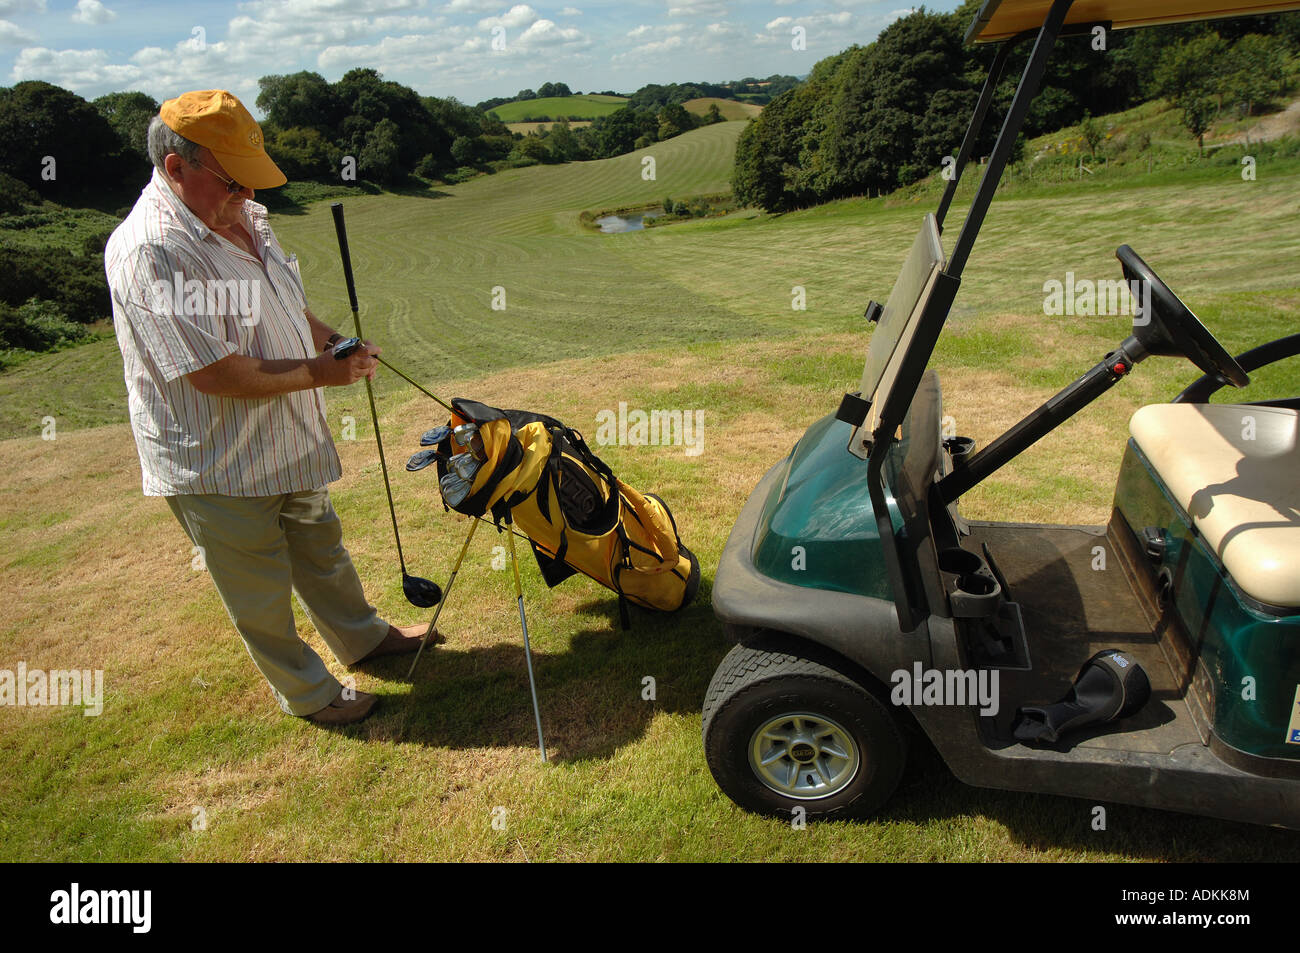 Un uomo si prepara a tee off su di un campo da golf nel Somerset, Regno Unito. Foto Stock